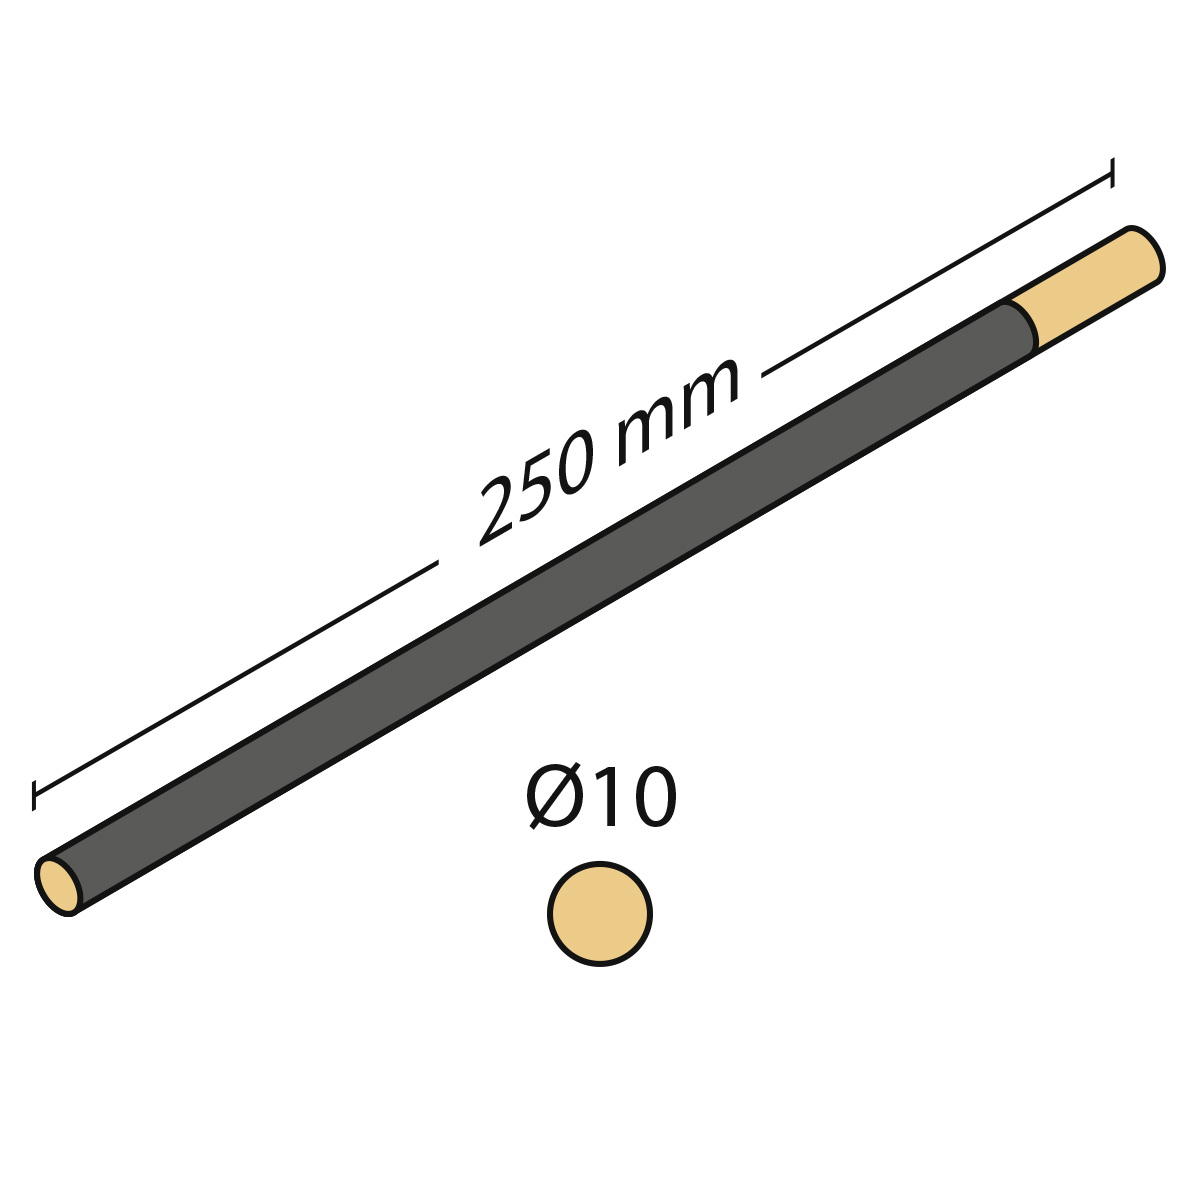 Cabron d'émeri rond, longueur 250 mm, Ø 10 mm, très fin, grain 500